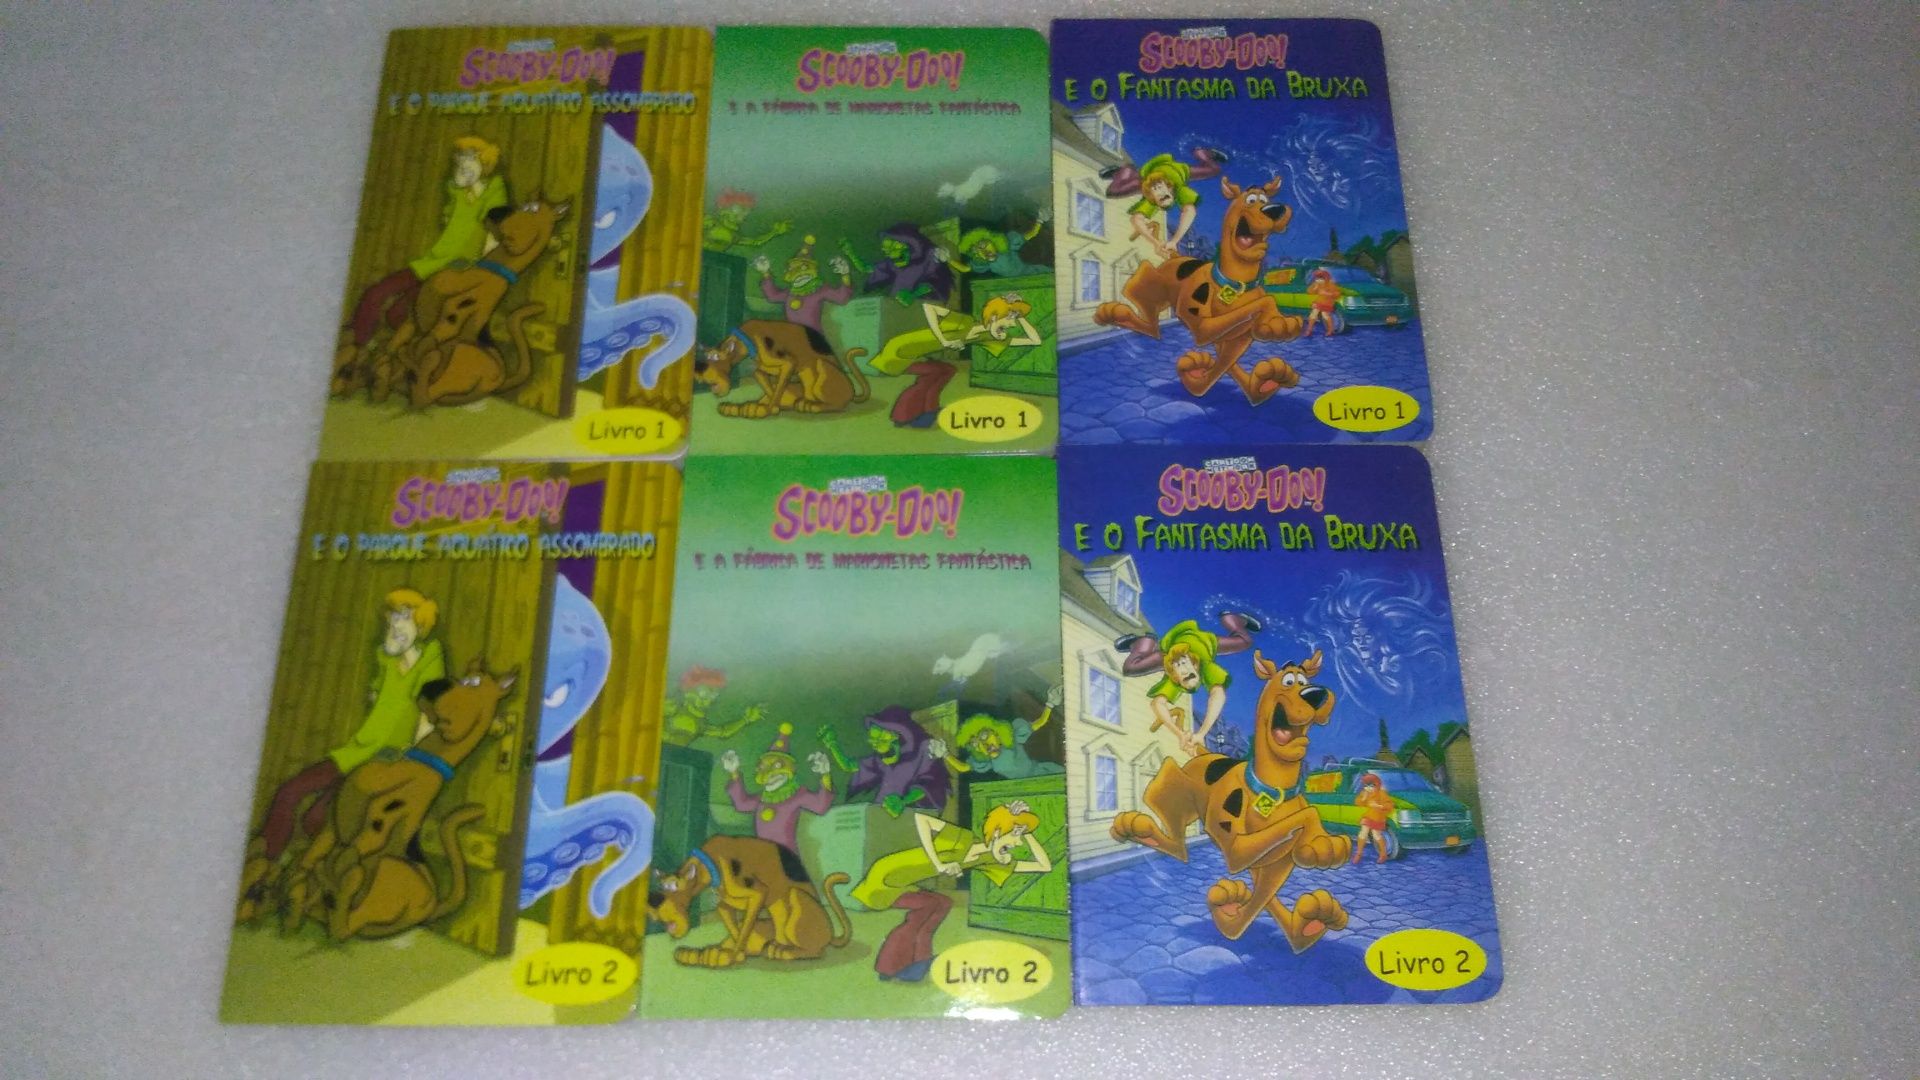 Caixa Antiga com 6 livros Scooby-Doo!  2006 marca registada Hanna-Barb